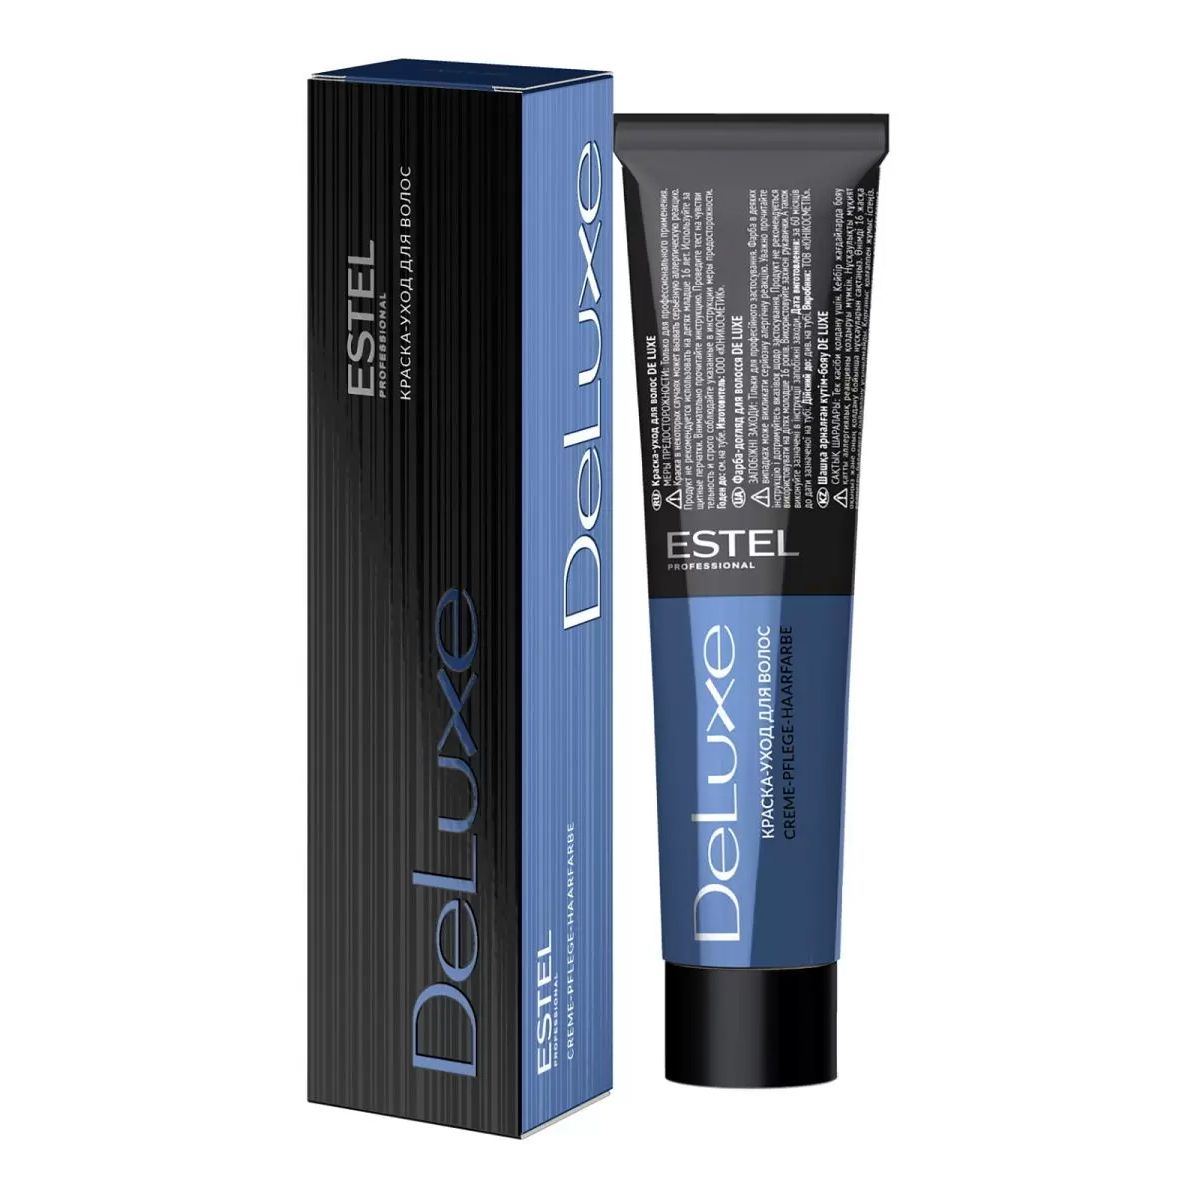 Краска для волос Estel Professional De Luxe 6/3 Темно-русый золотистый 60 мл халат женский махровый 80% хлопок 20% полиэстер темно голубой 48 багира lx 13 005 1